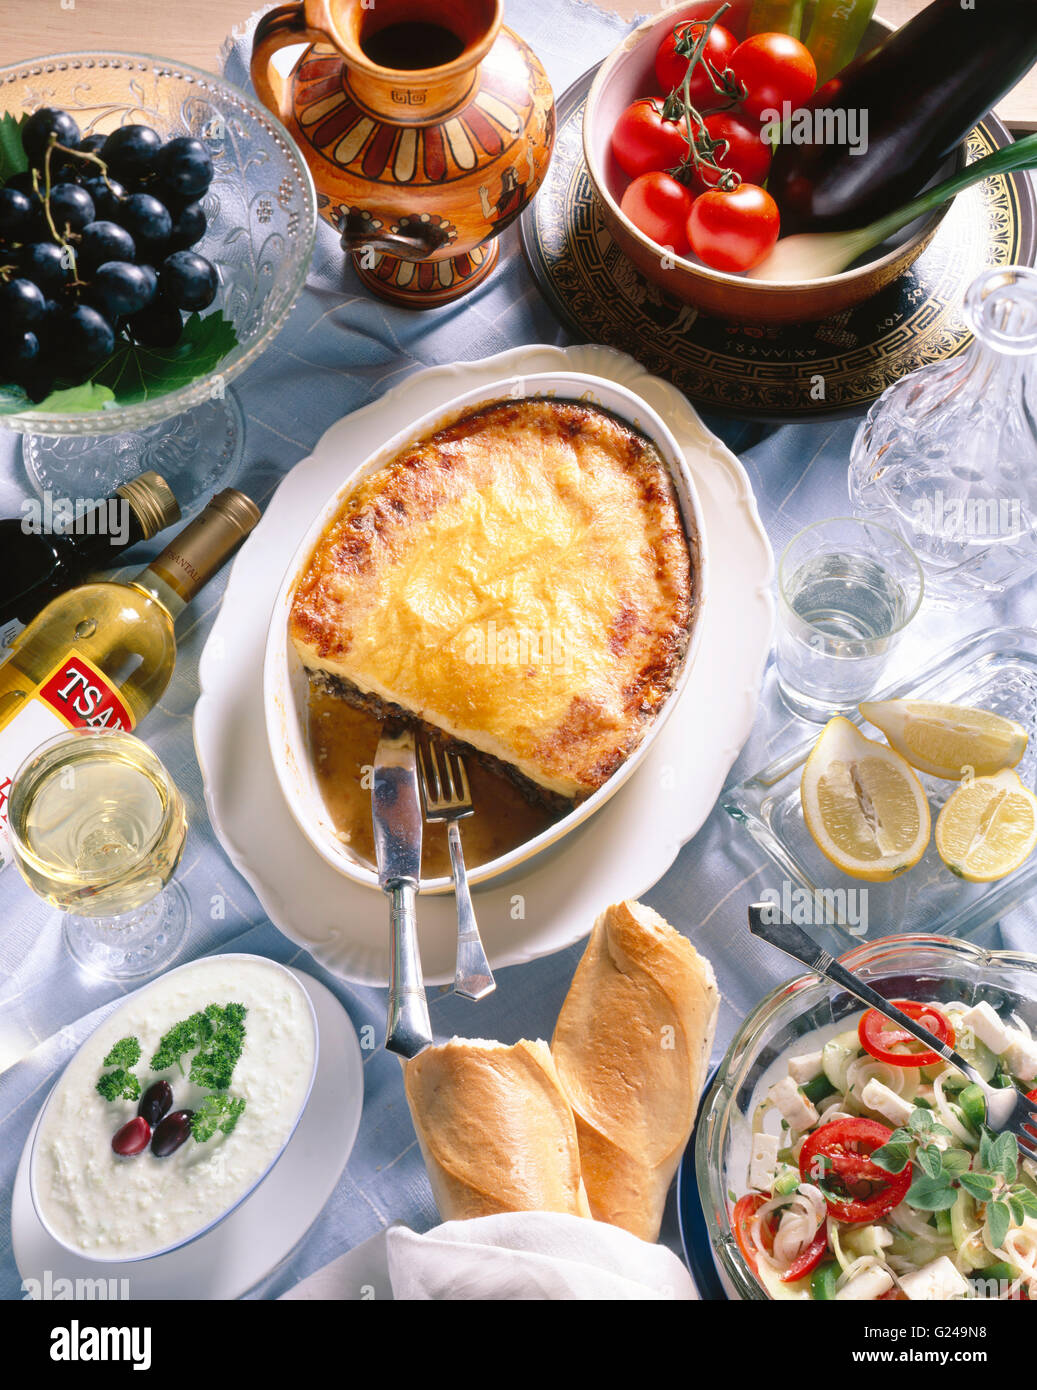 La cuisine nationale grecque, salade de fromage feta, tzatziki, la moussaka, vin Retsina Banque D'Images